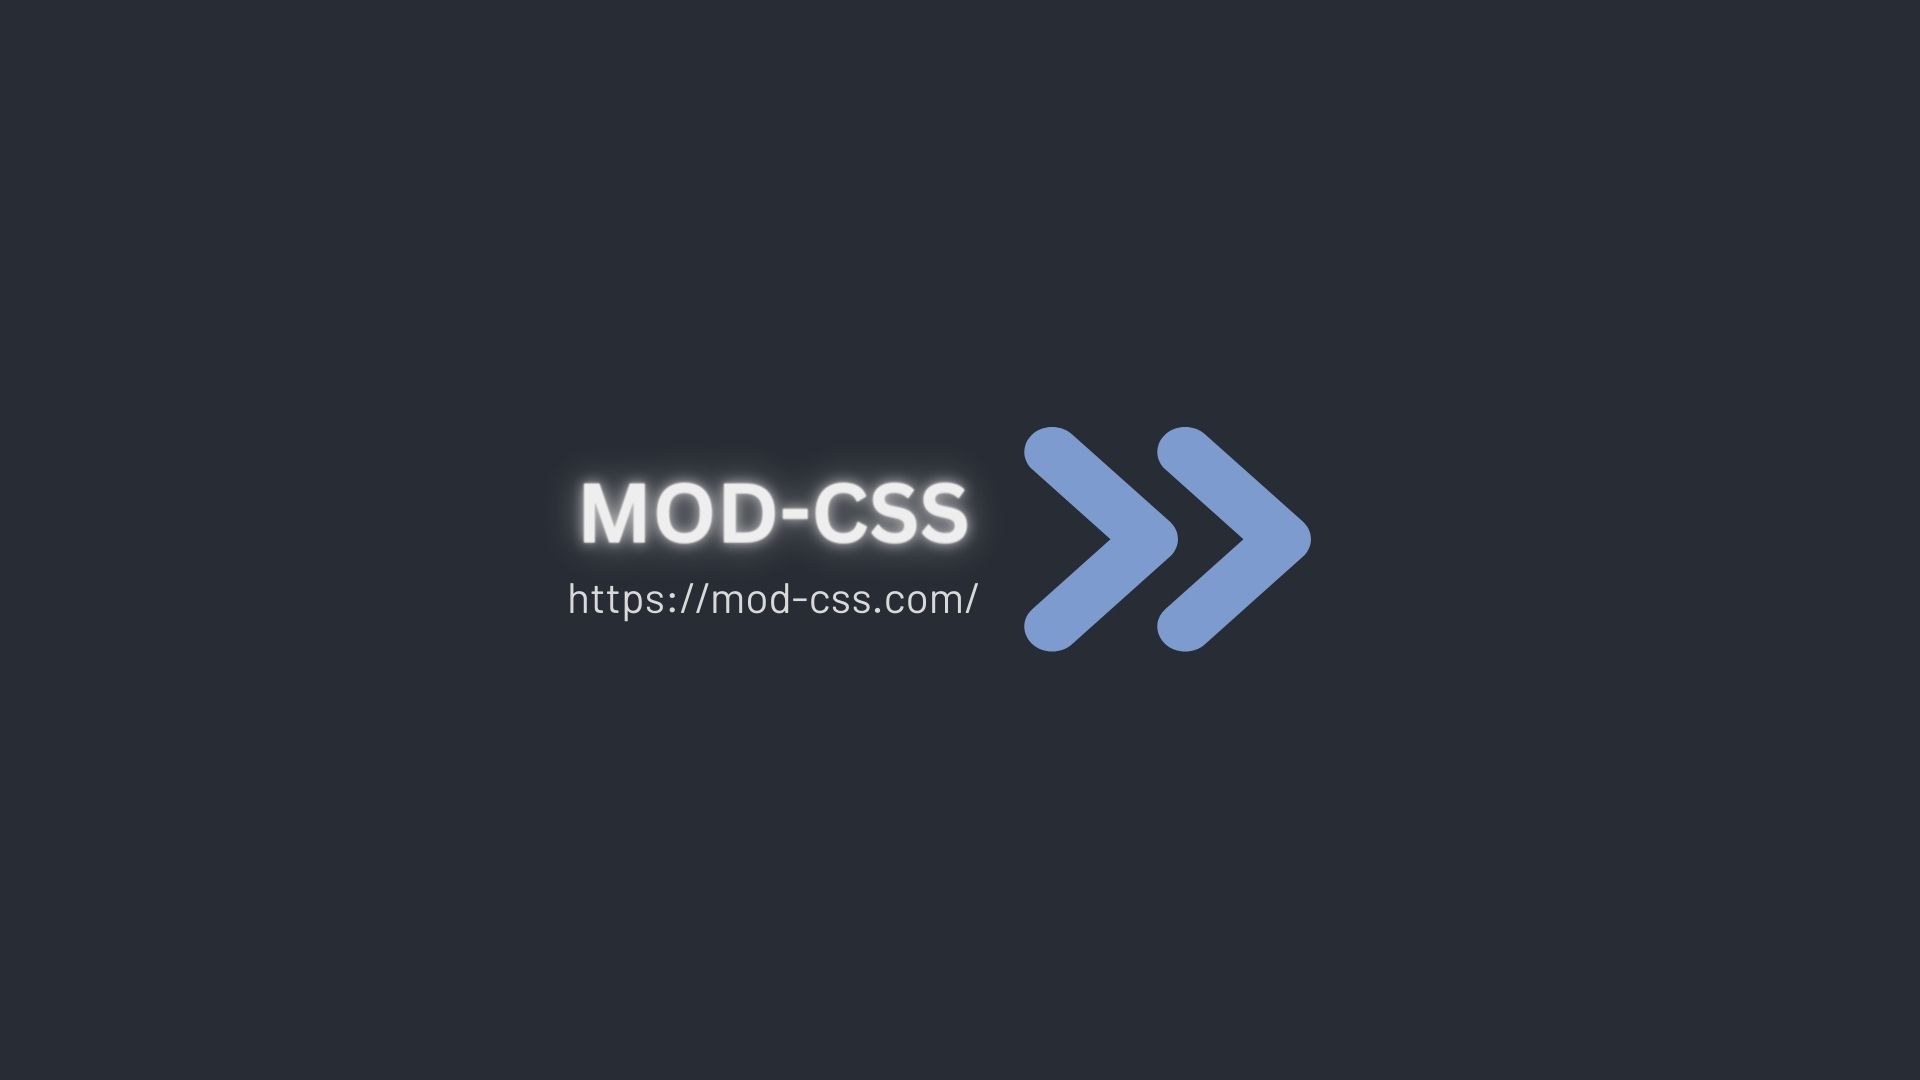 mod-css_logo-website-url